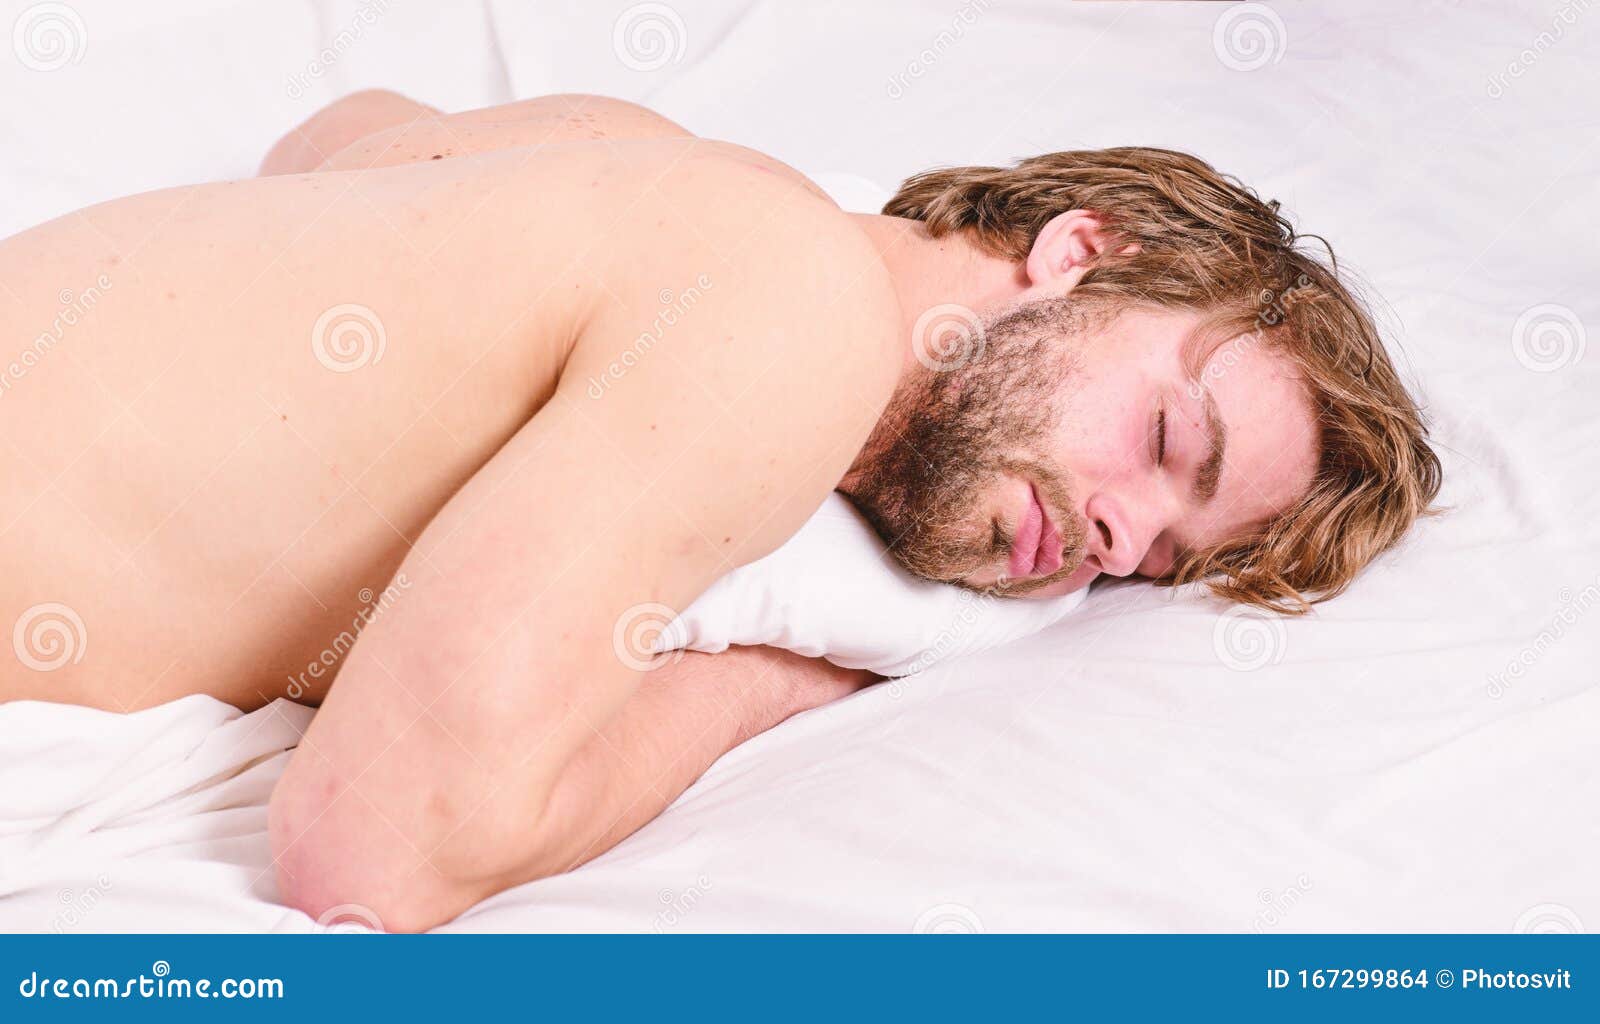 сонник толкование сна голый мужчина фото 84